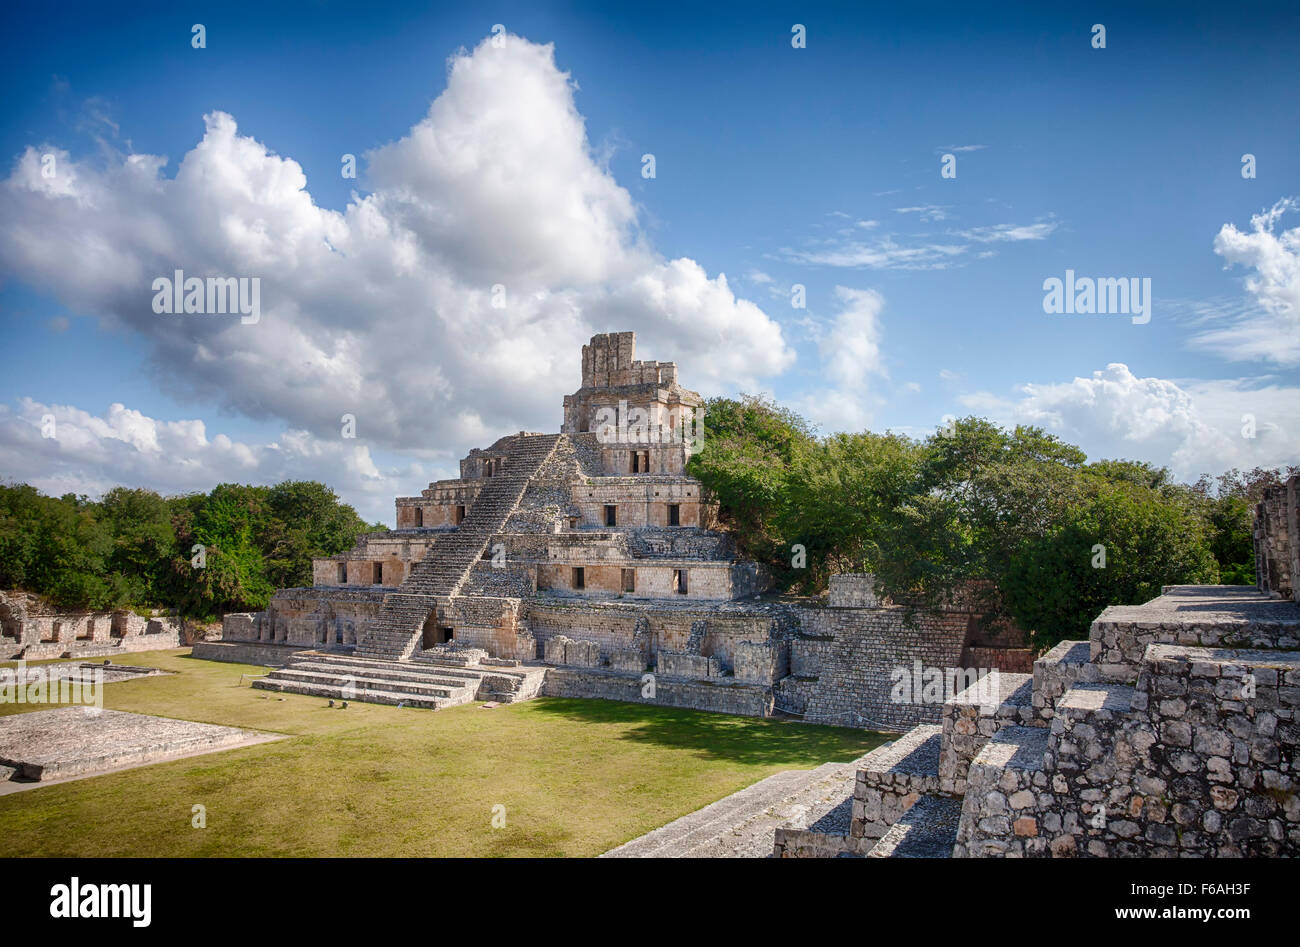 La pirámide de cinco pisos en las ruinas mayas de Edzná, Campeche, México. Foto de stock